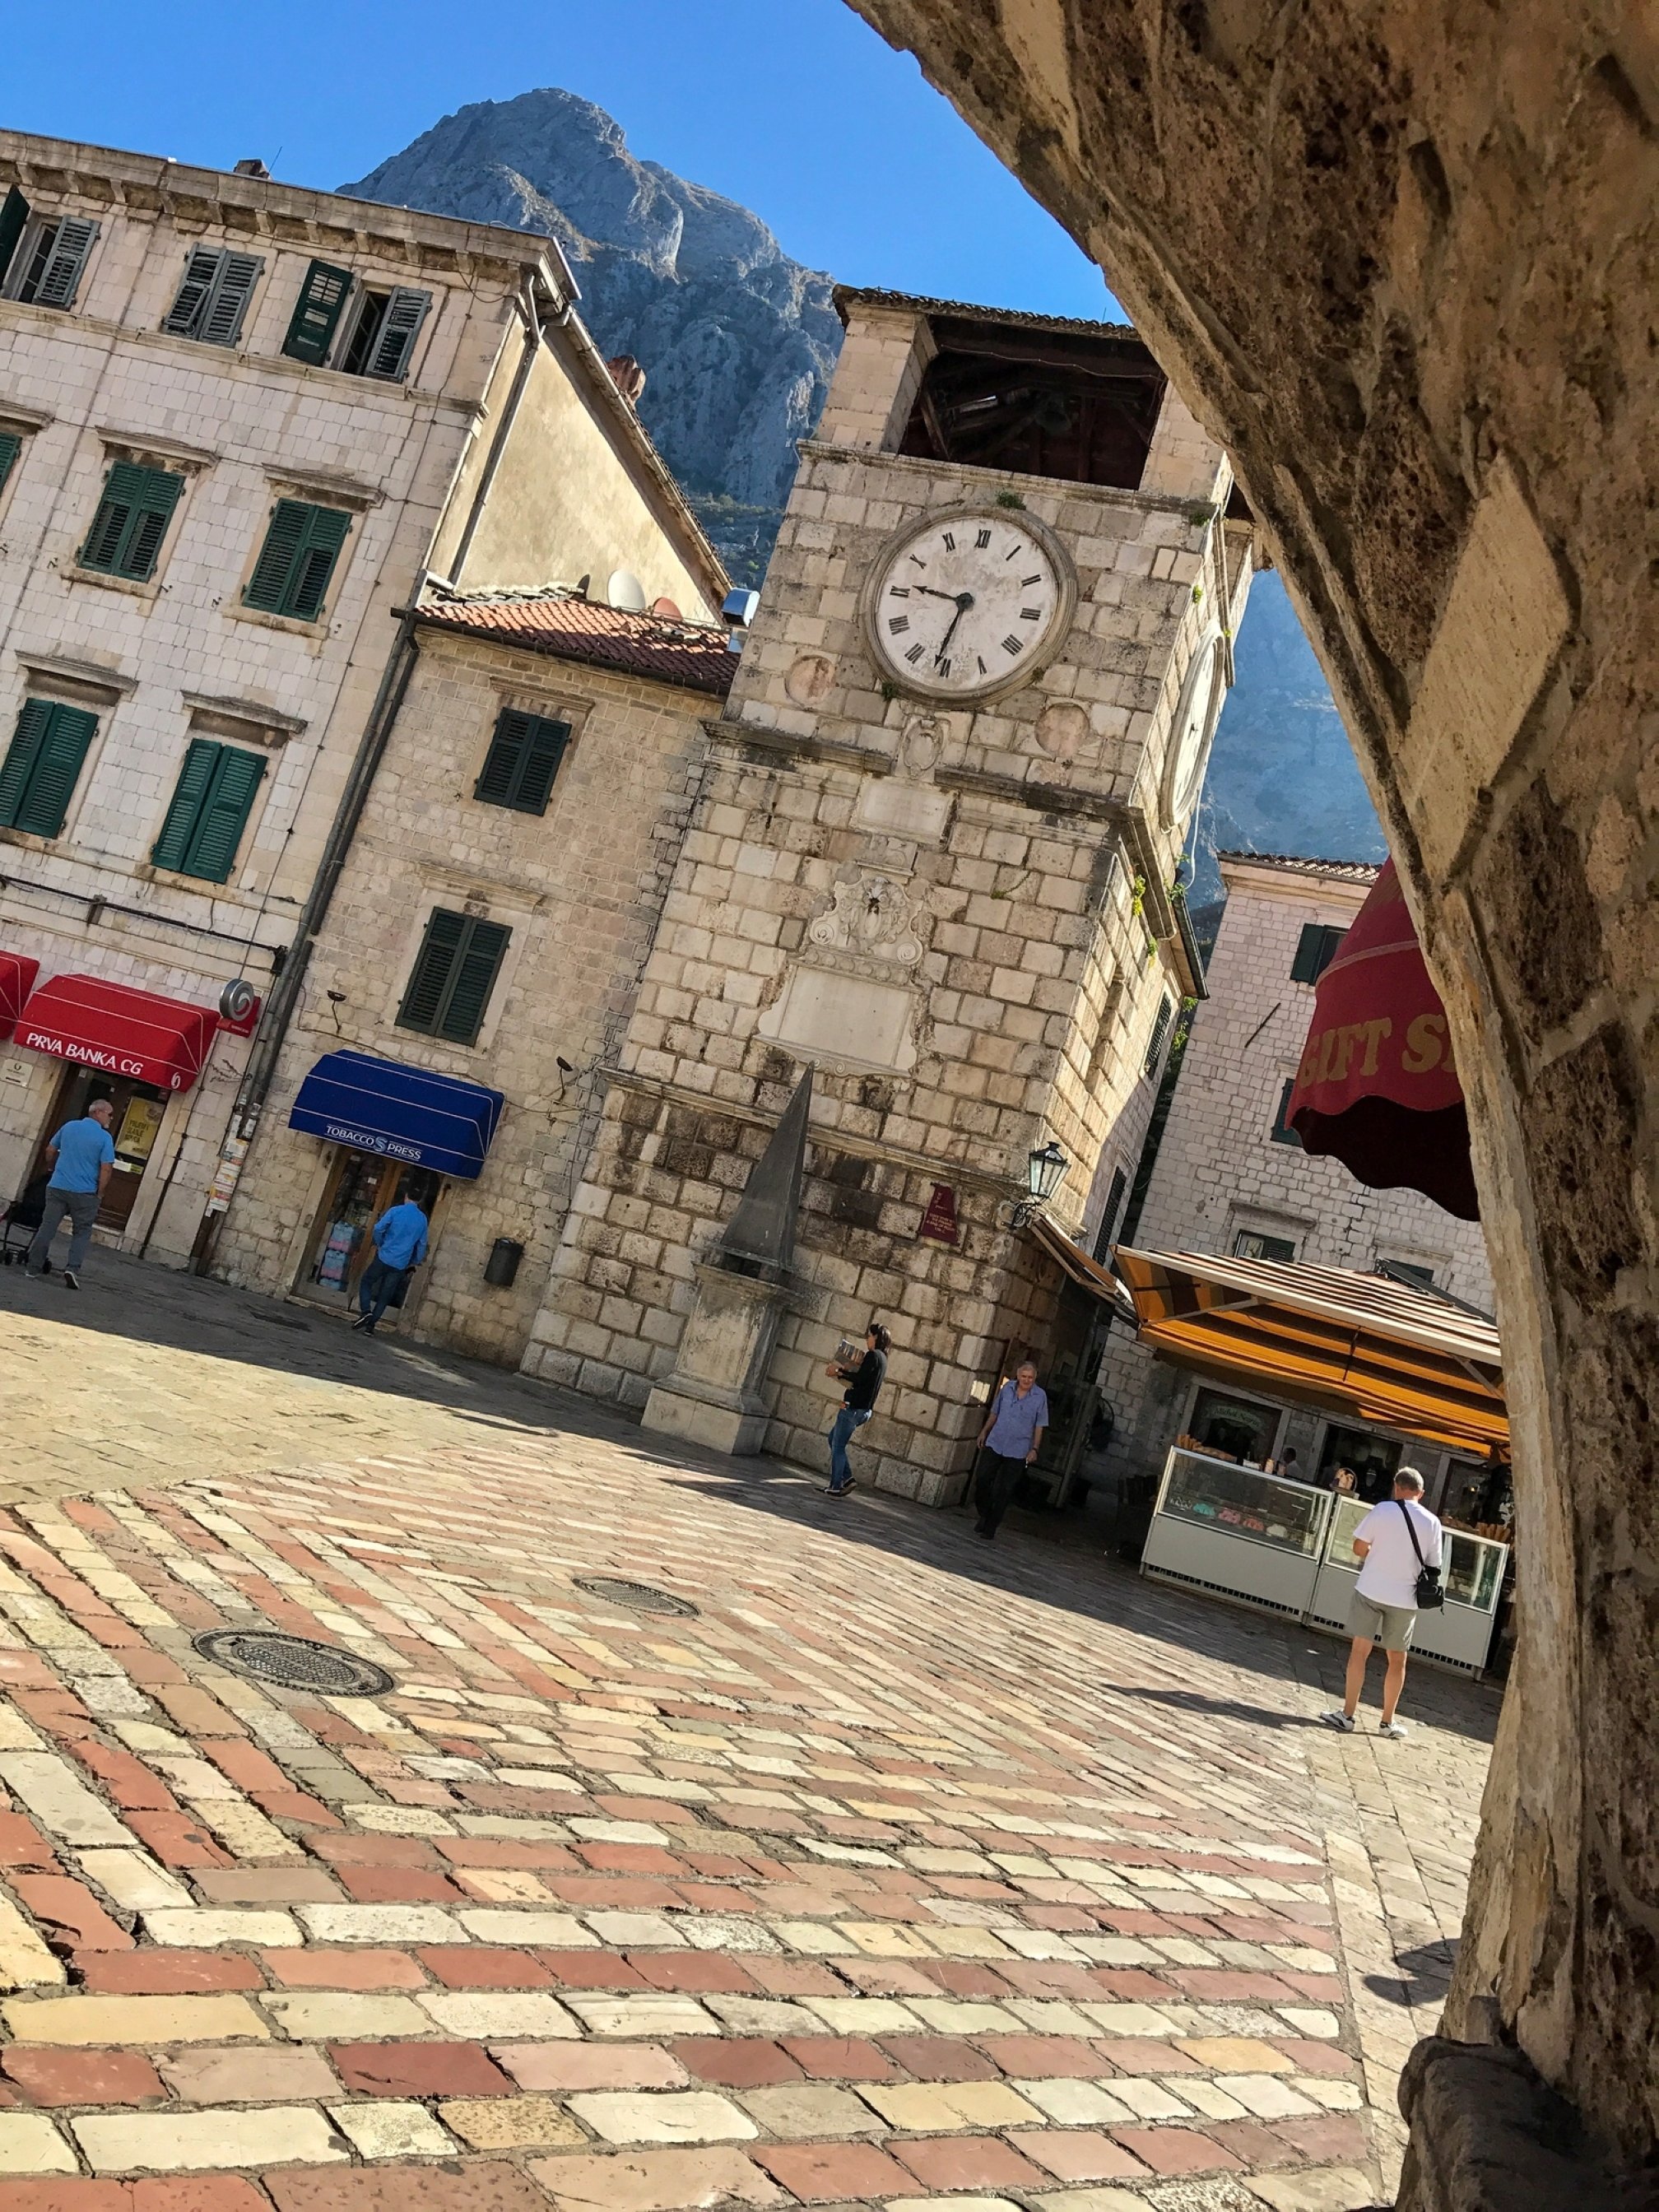 Menara jam di kota Kotor, Montenegro.  (Foto oleh zge engelen)